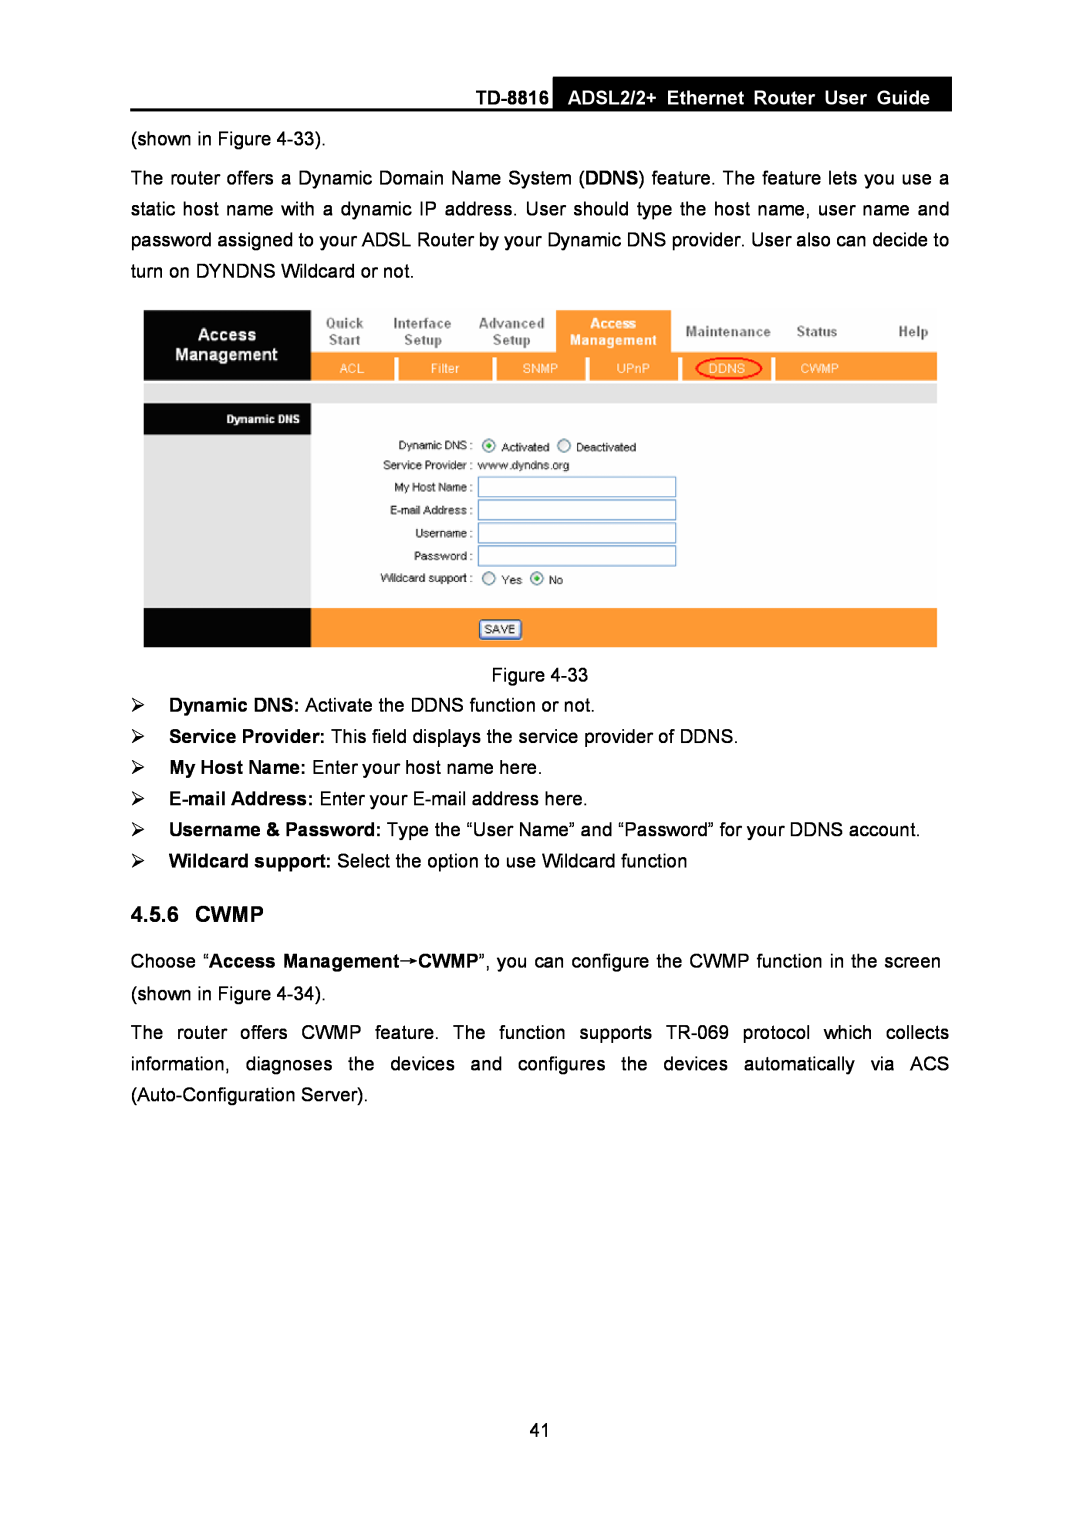 TP-Link TD-8816 manual Cwmp, ADSL2/2+ Ethernet Router User Guide 